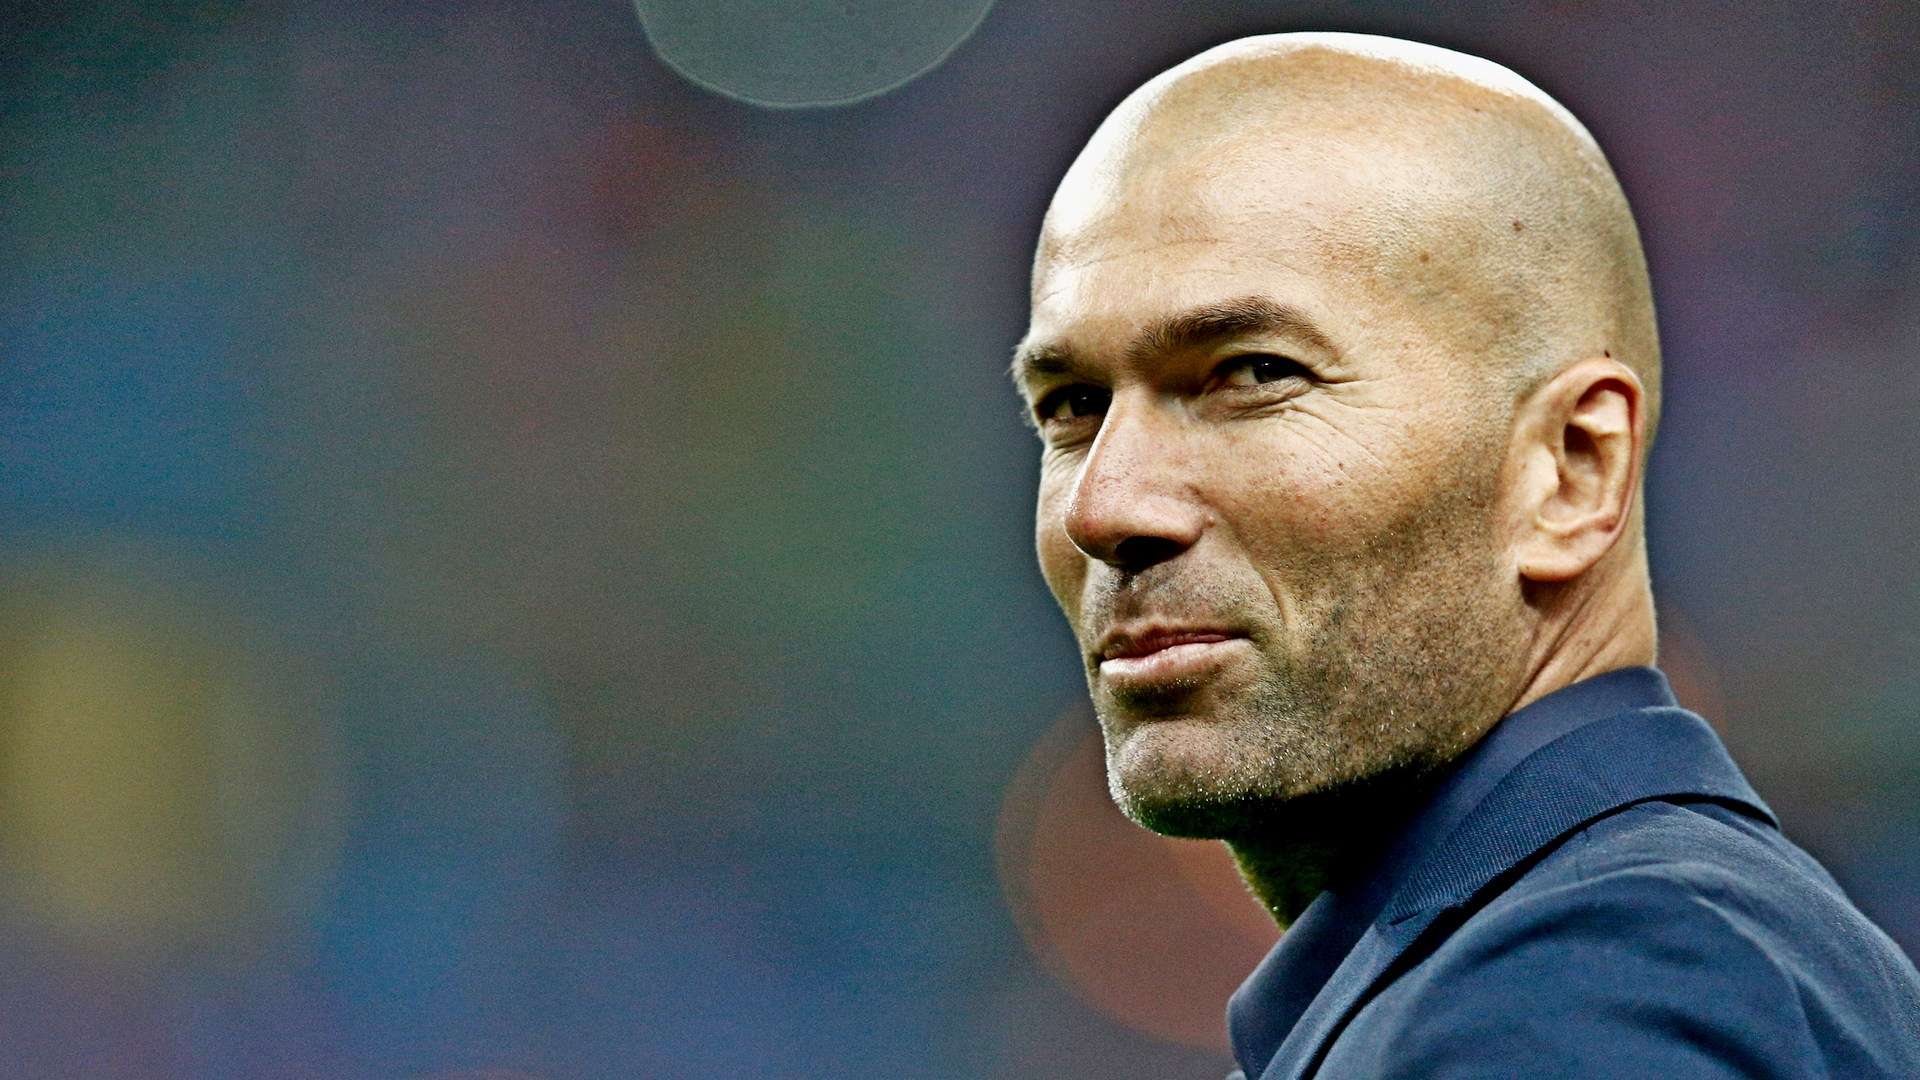 Zidane-2652018-Getty